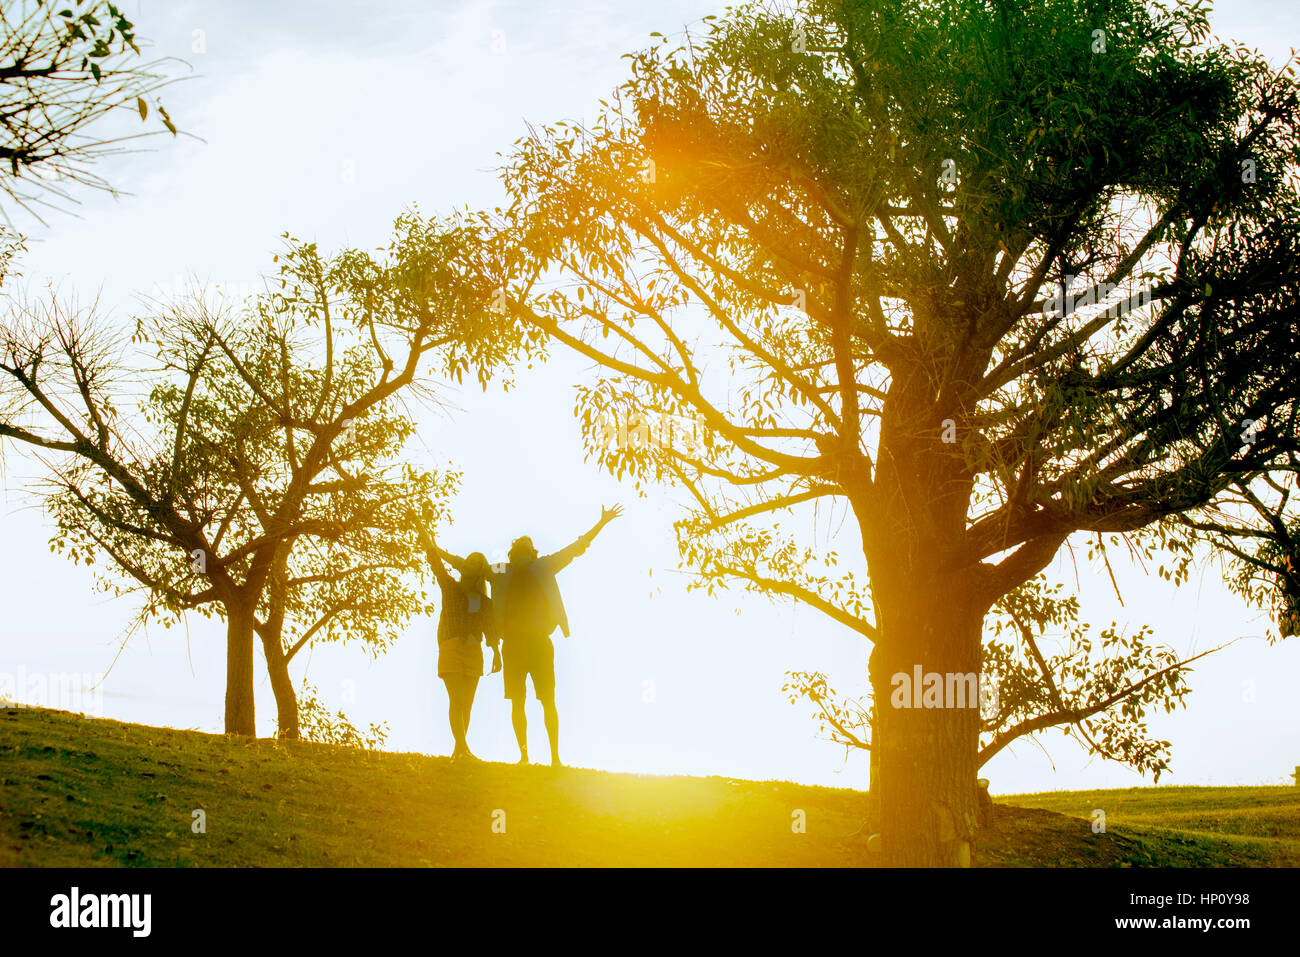 Couple enjoying nature, backlit by sunlight Stock Photo